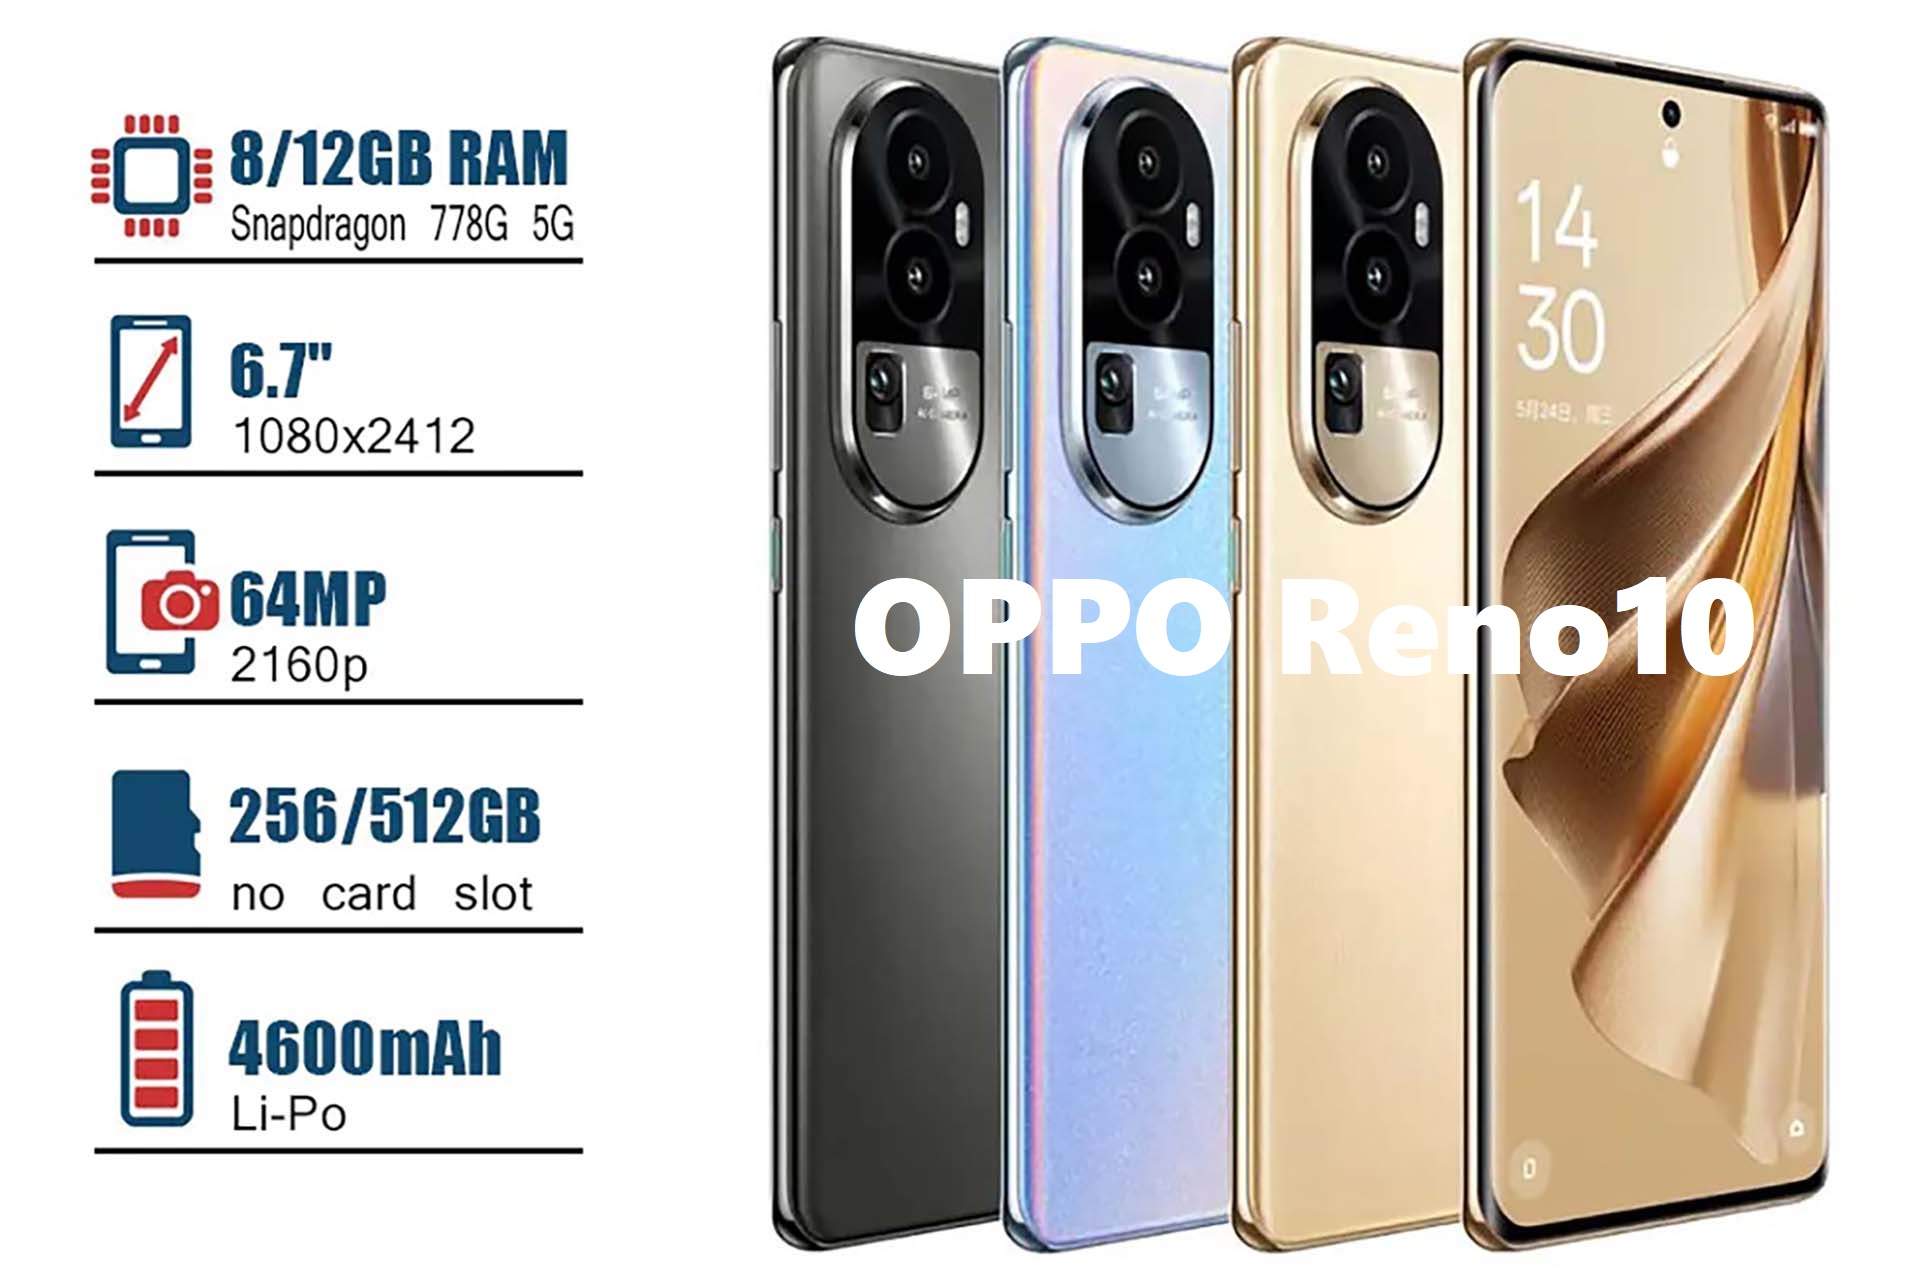 OPPO Reno10 Review